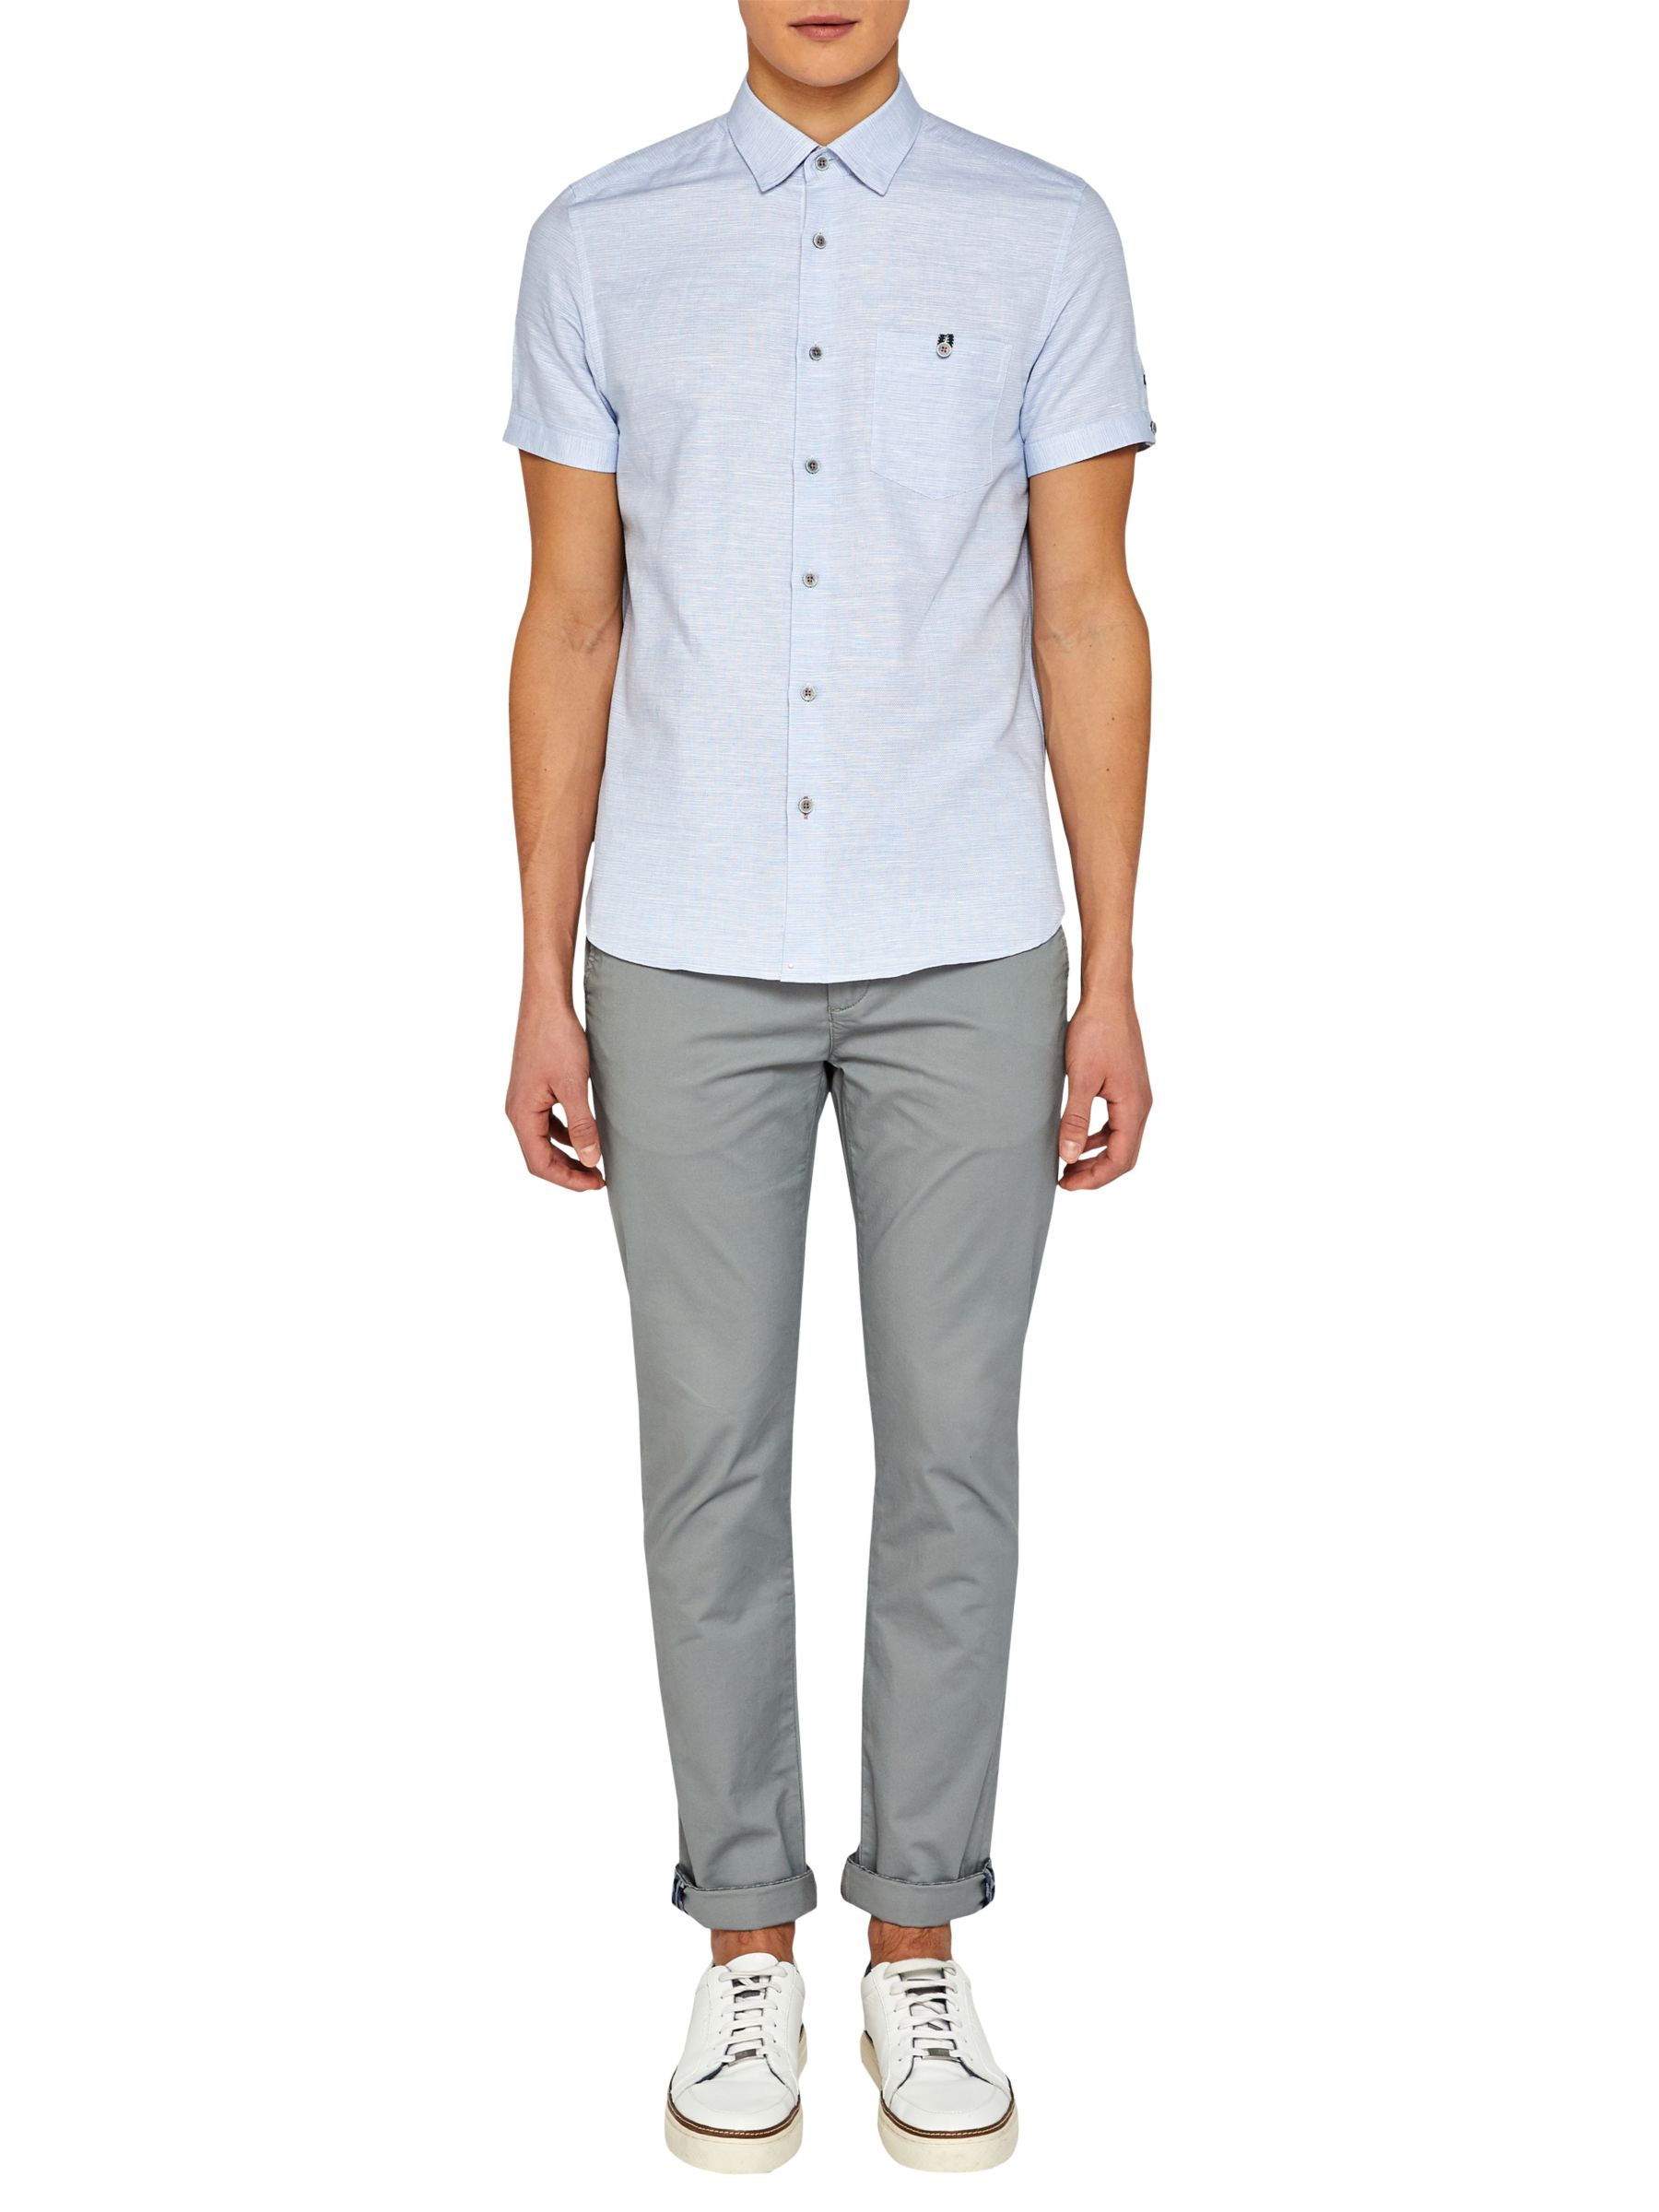 Ted Baker Peeze Cotton Linen Short Sleeve Shirt, Blue, 4